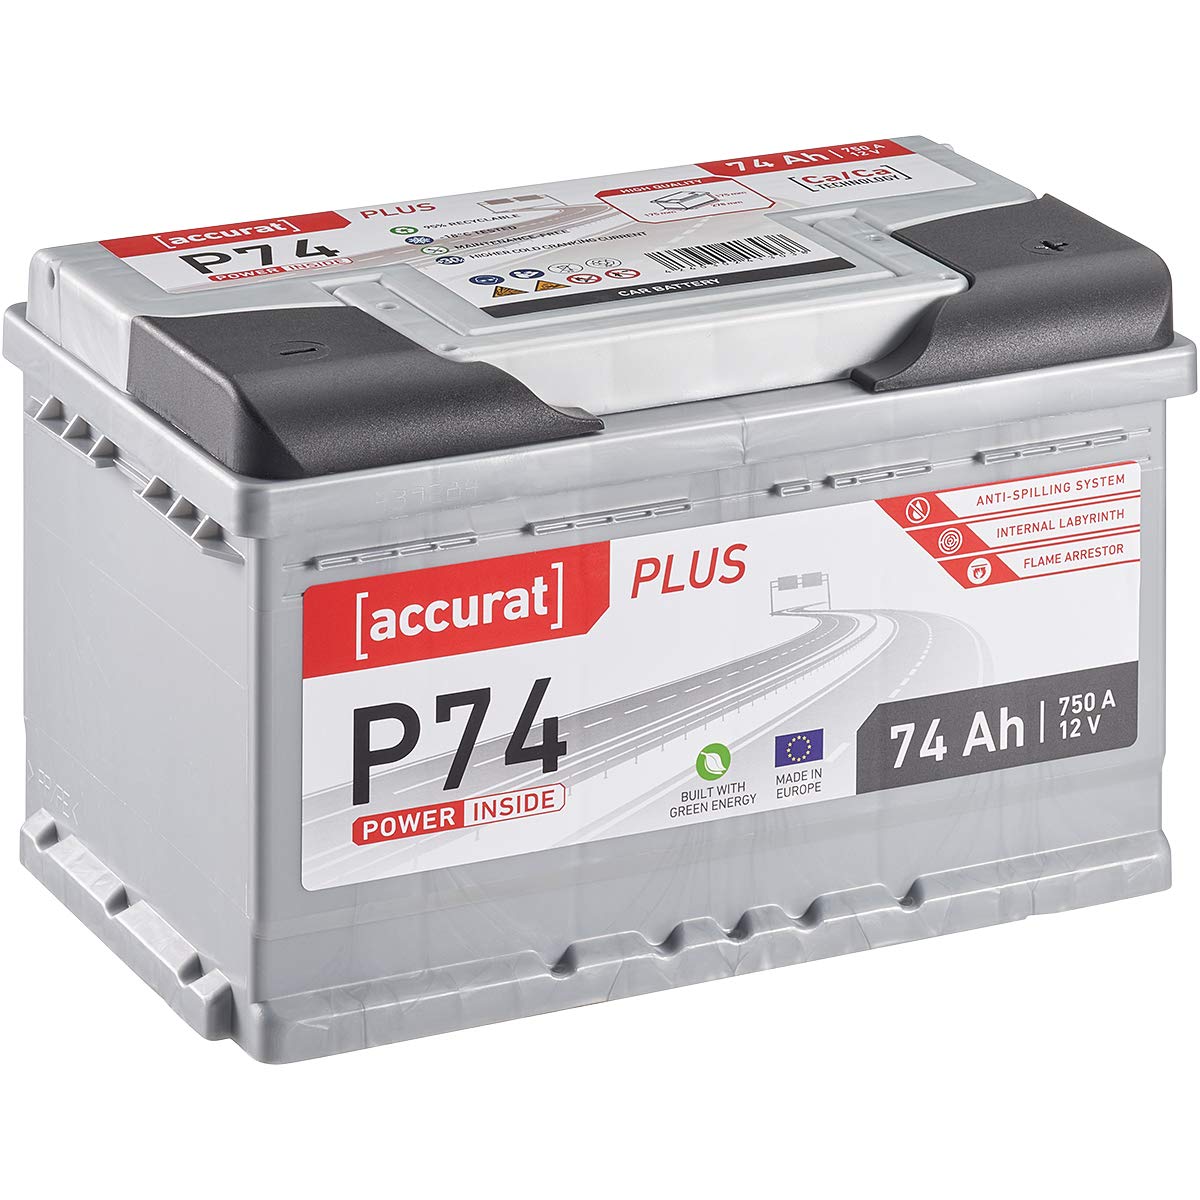 Accurat Plus P74 Autobatterie - 12V, 74Ah, 750A, zyklenfest, wartungsfrei, 35% mehr Startleistung, Ca-Technologie, Kaltstartkraft - Starterbatterie, Nassbatterie, Blei-Säure Batterie von Accurat